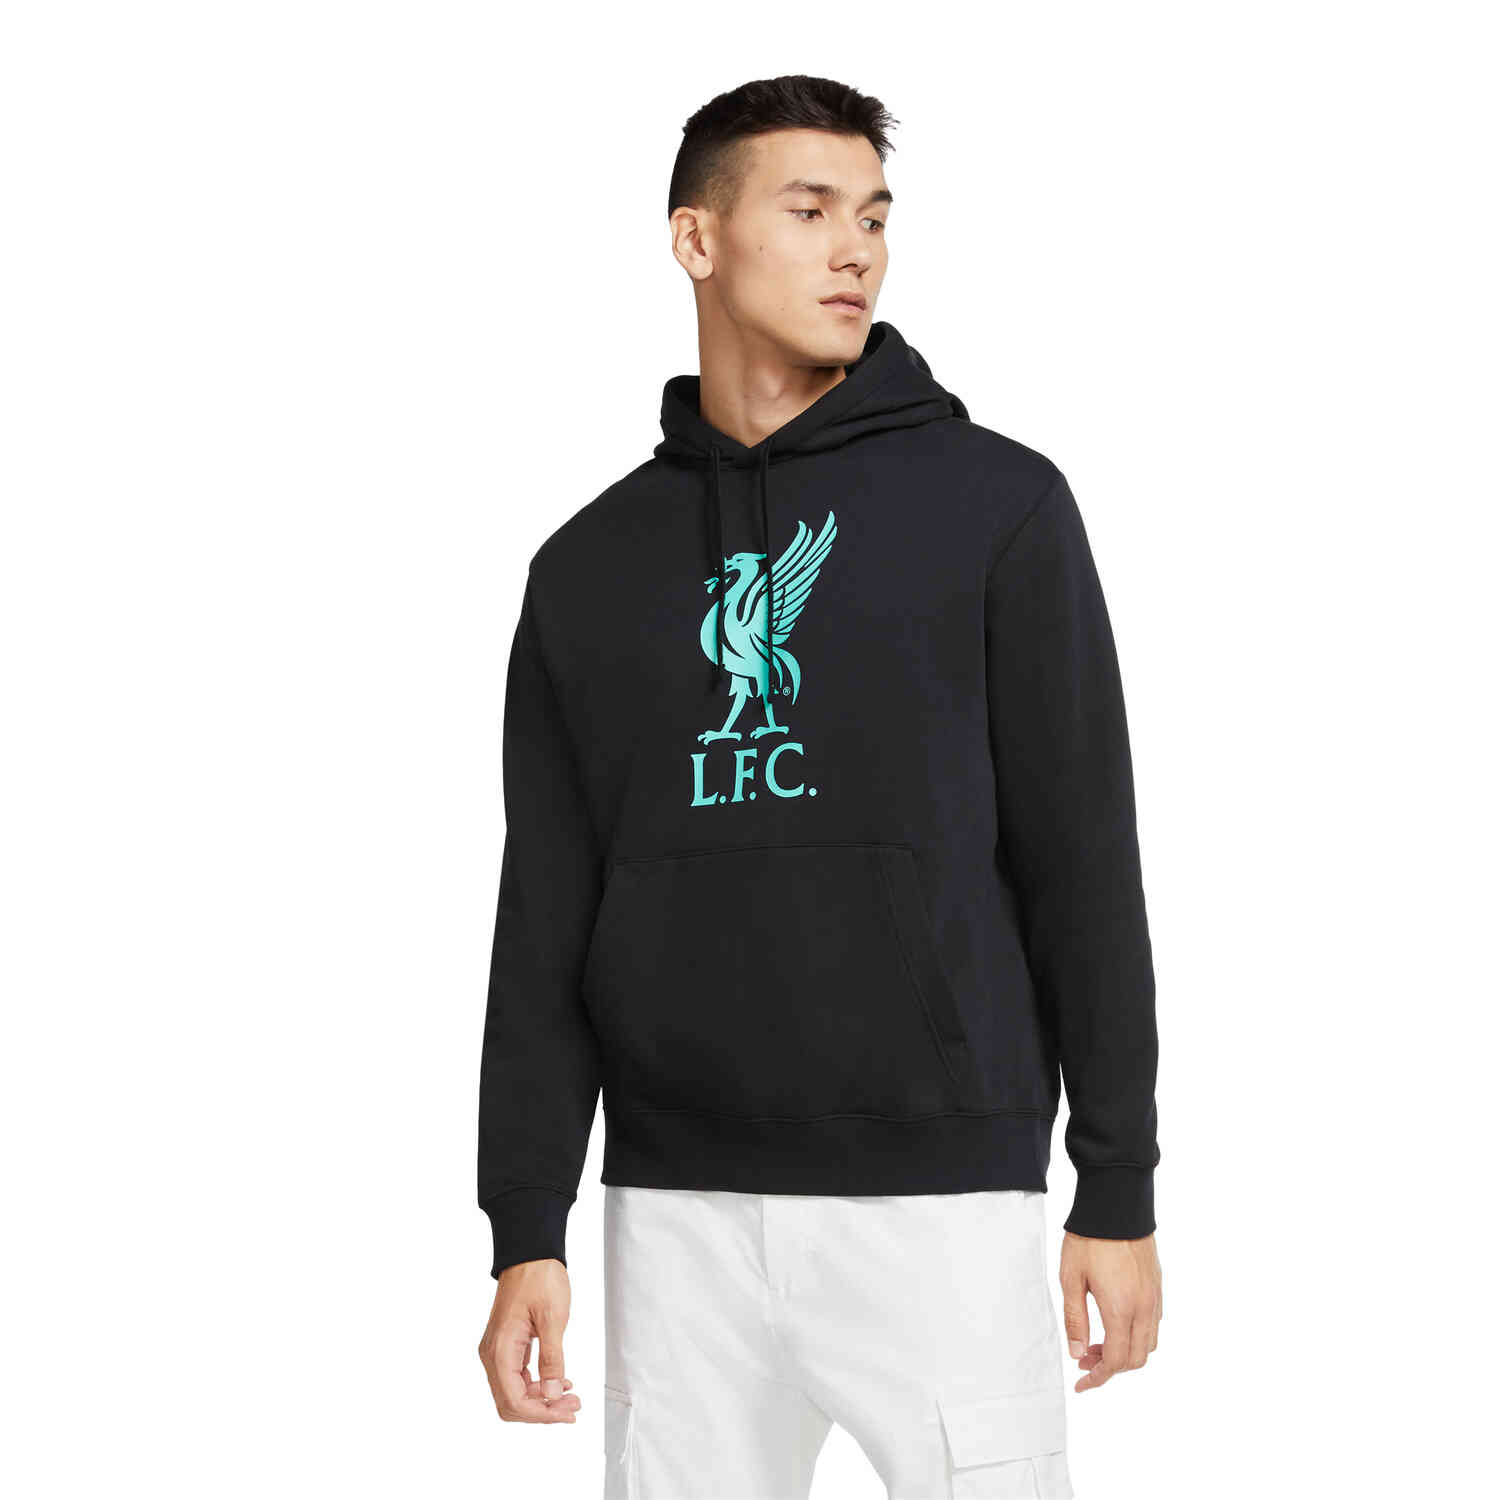 Nike Liverpool Pullover Hoodie - Black/Hyper Turq - SoccerPro